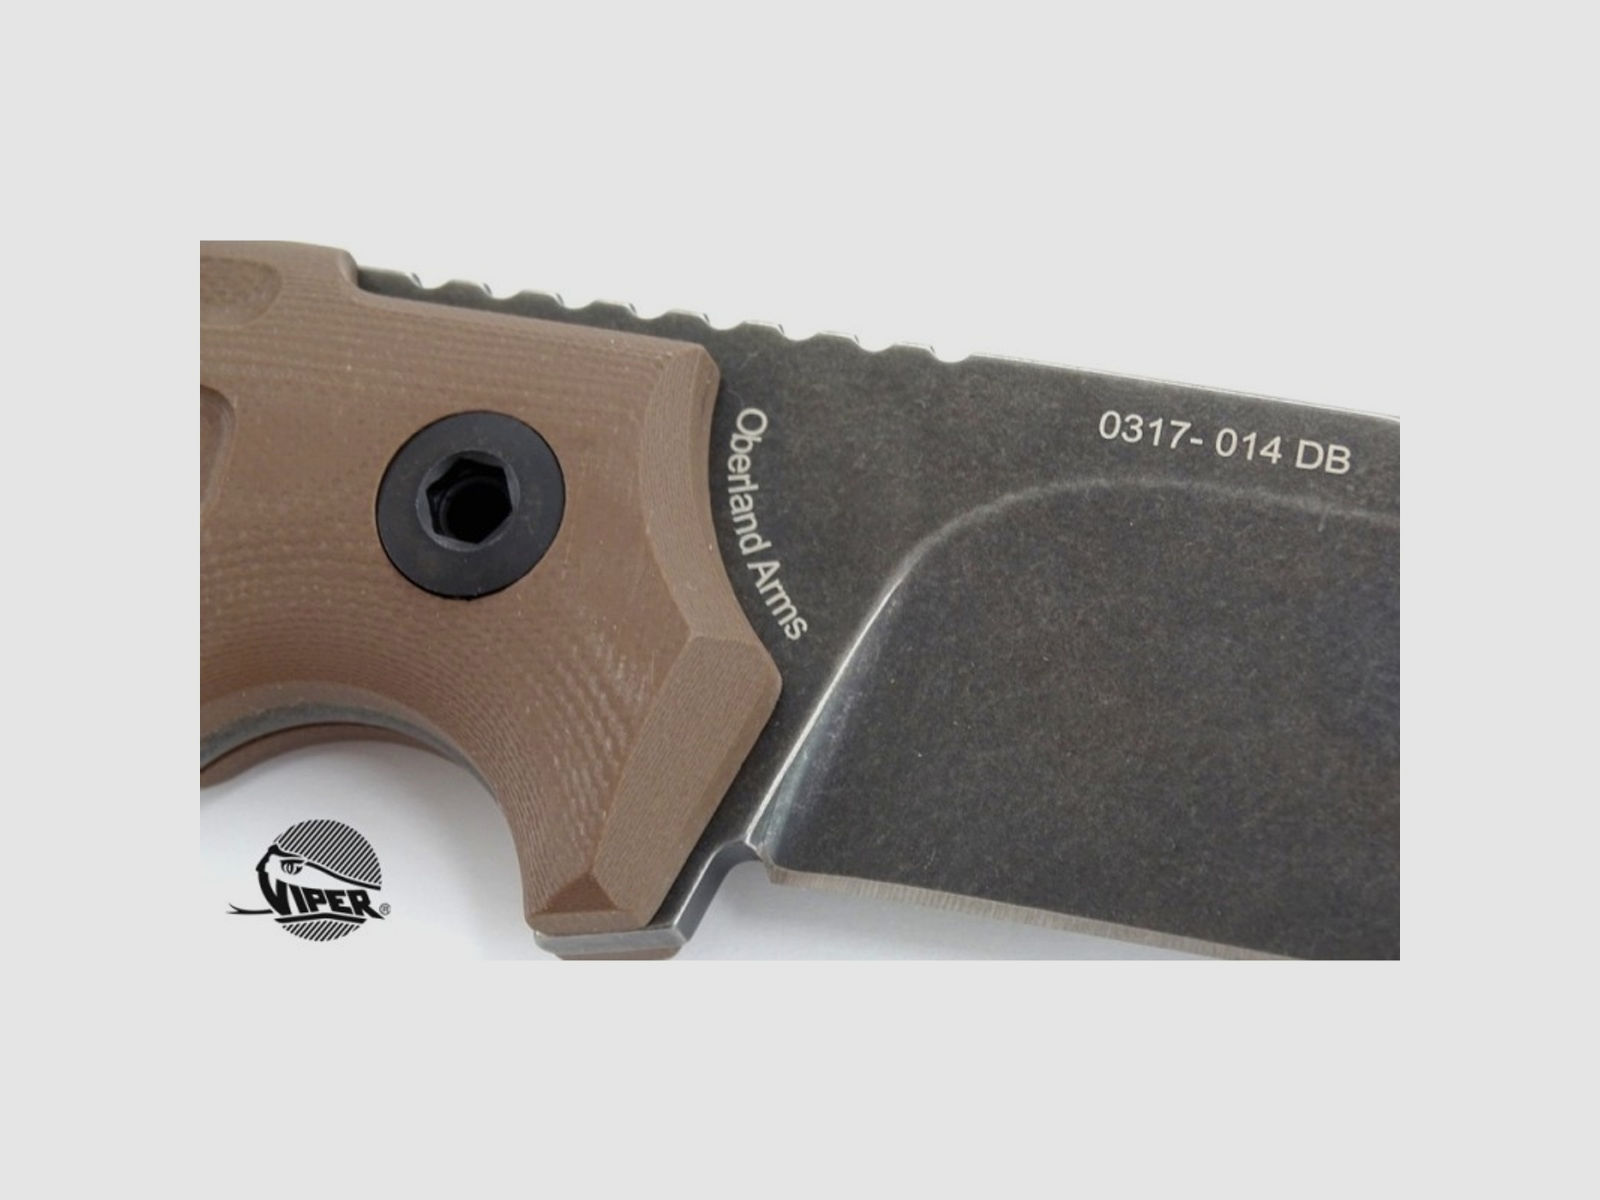 OA-Blade Section Messer / Knives Modell Wuiderer Sepp